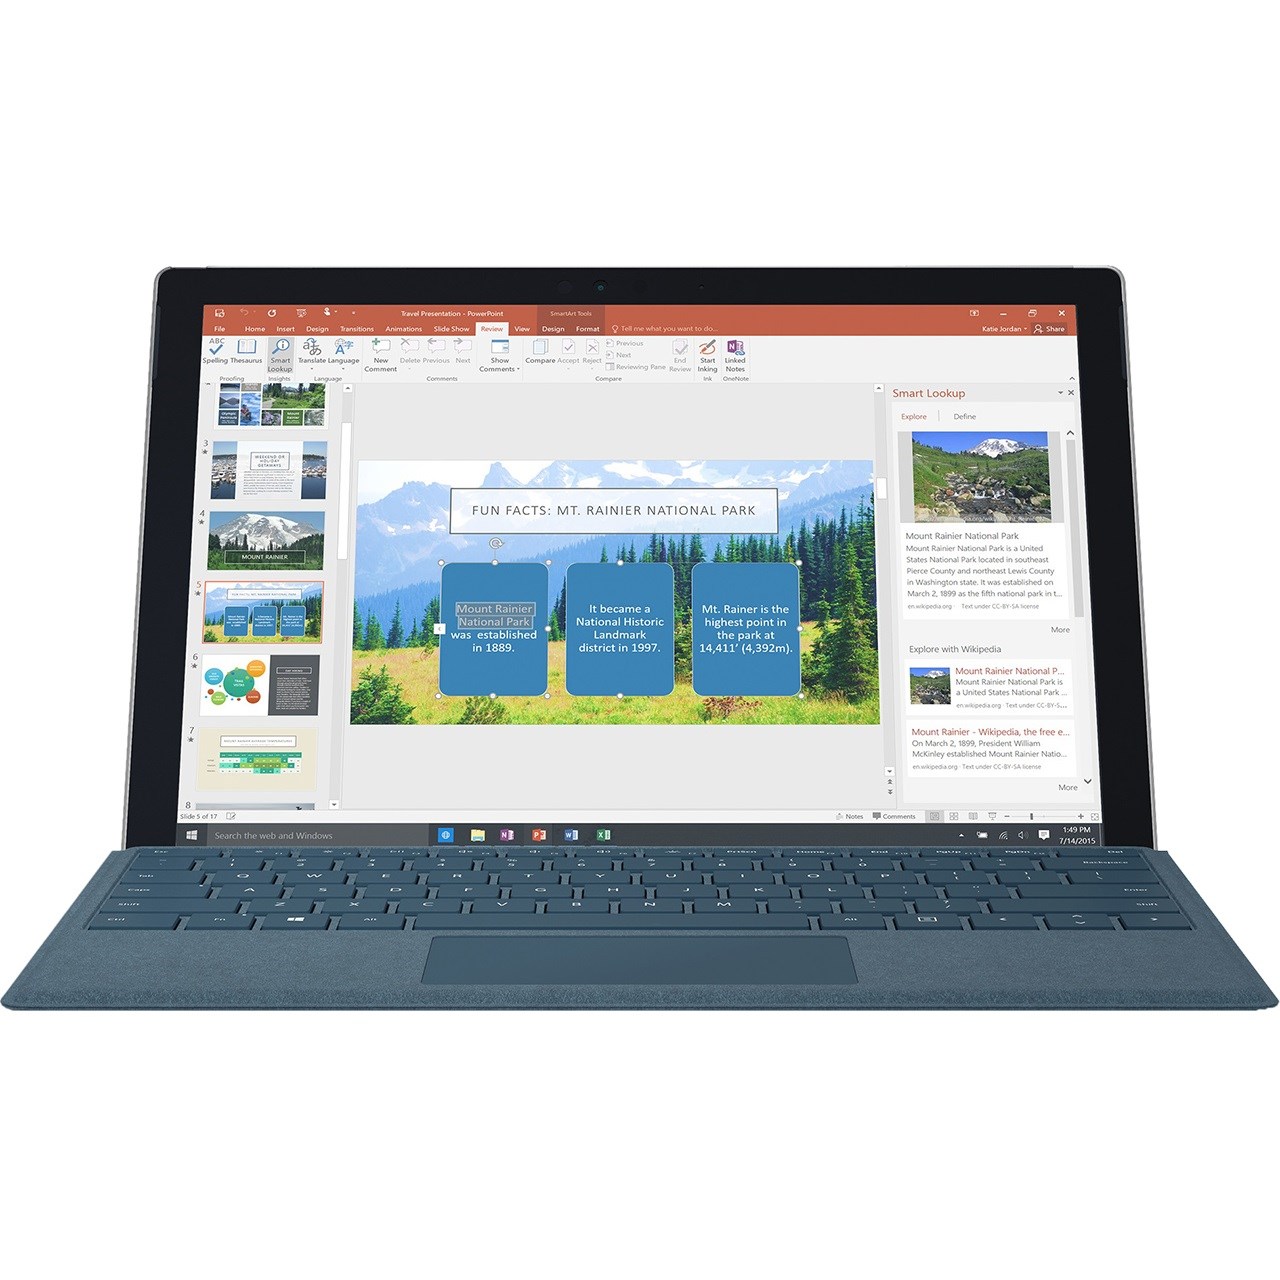 تبلت مایکروسافت مدل Surface Pro 2017 - E به همراه کیبورد سیگنیچر رنگ آبی کبالت و کیف چرم صنوبر  - ظرفیت 512 گیگابایت